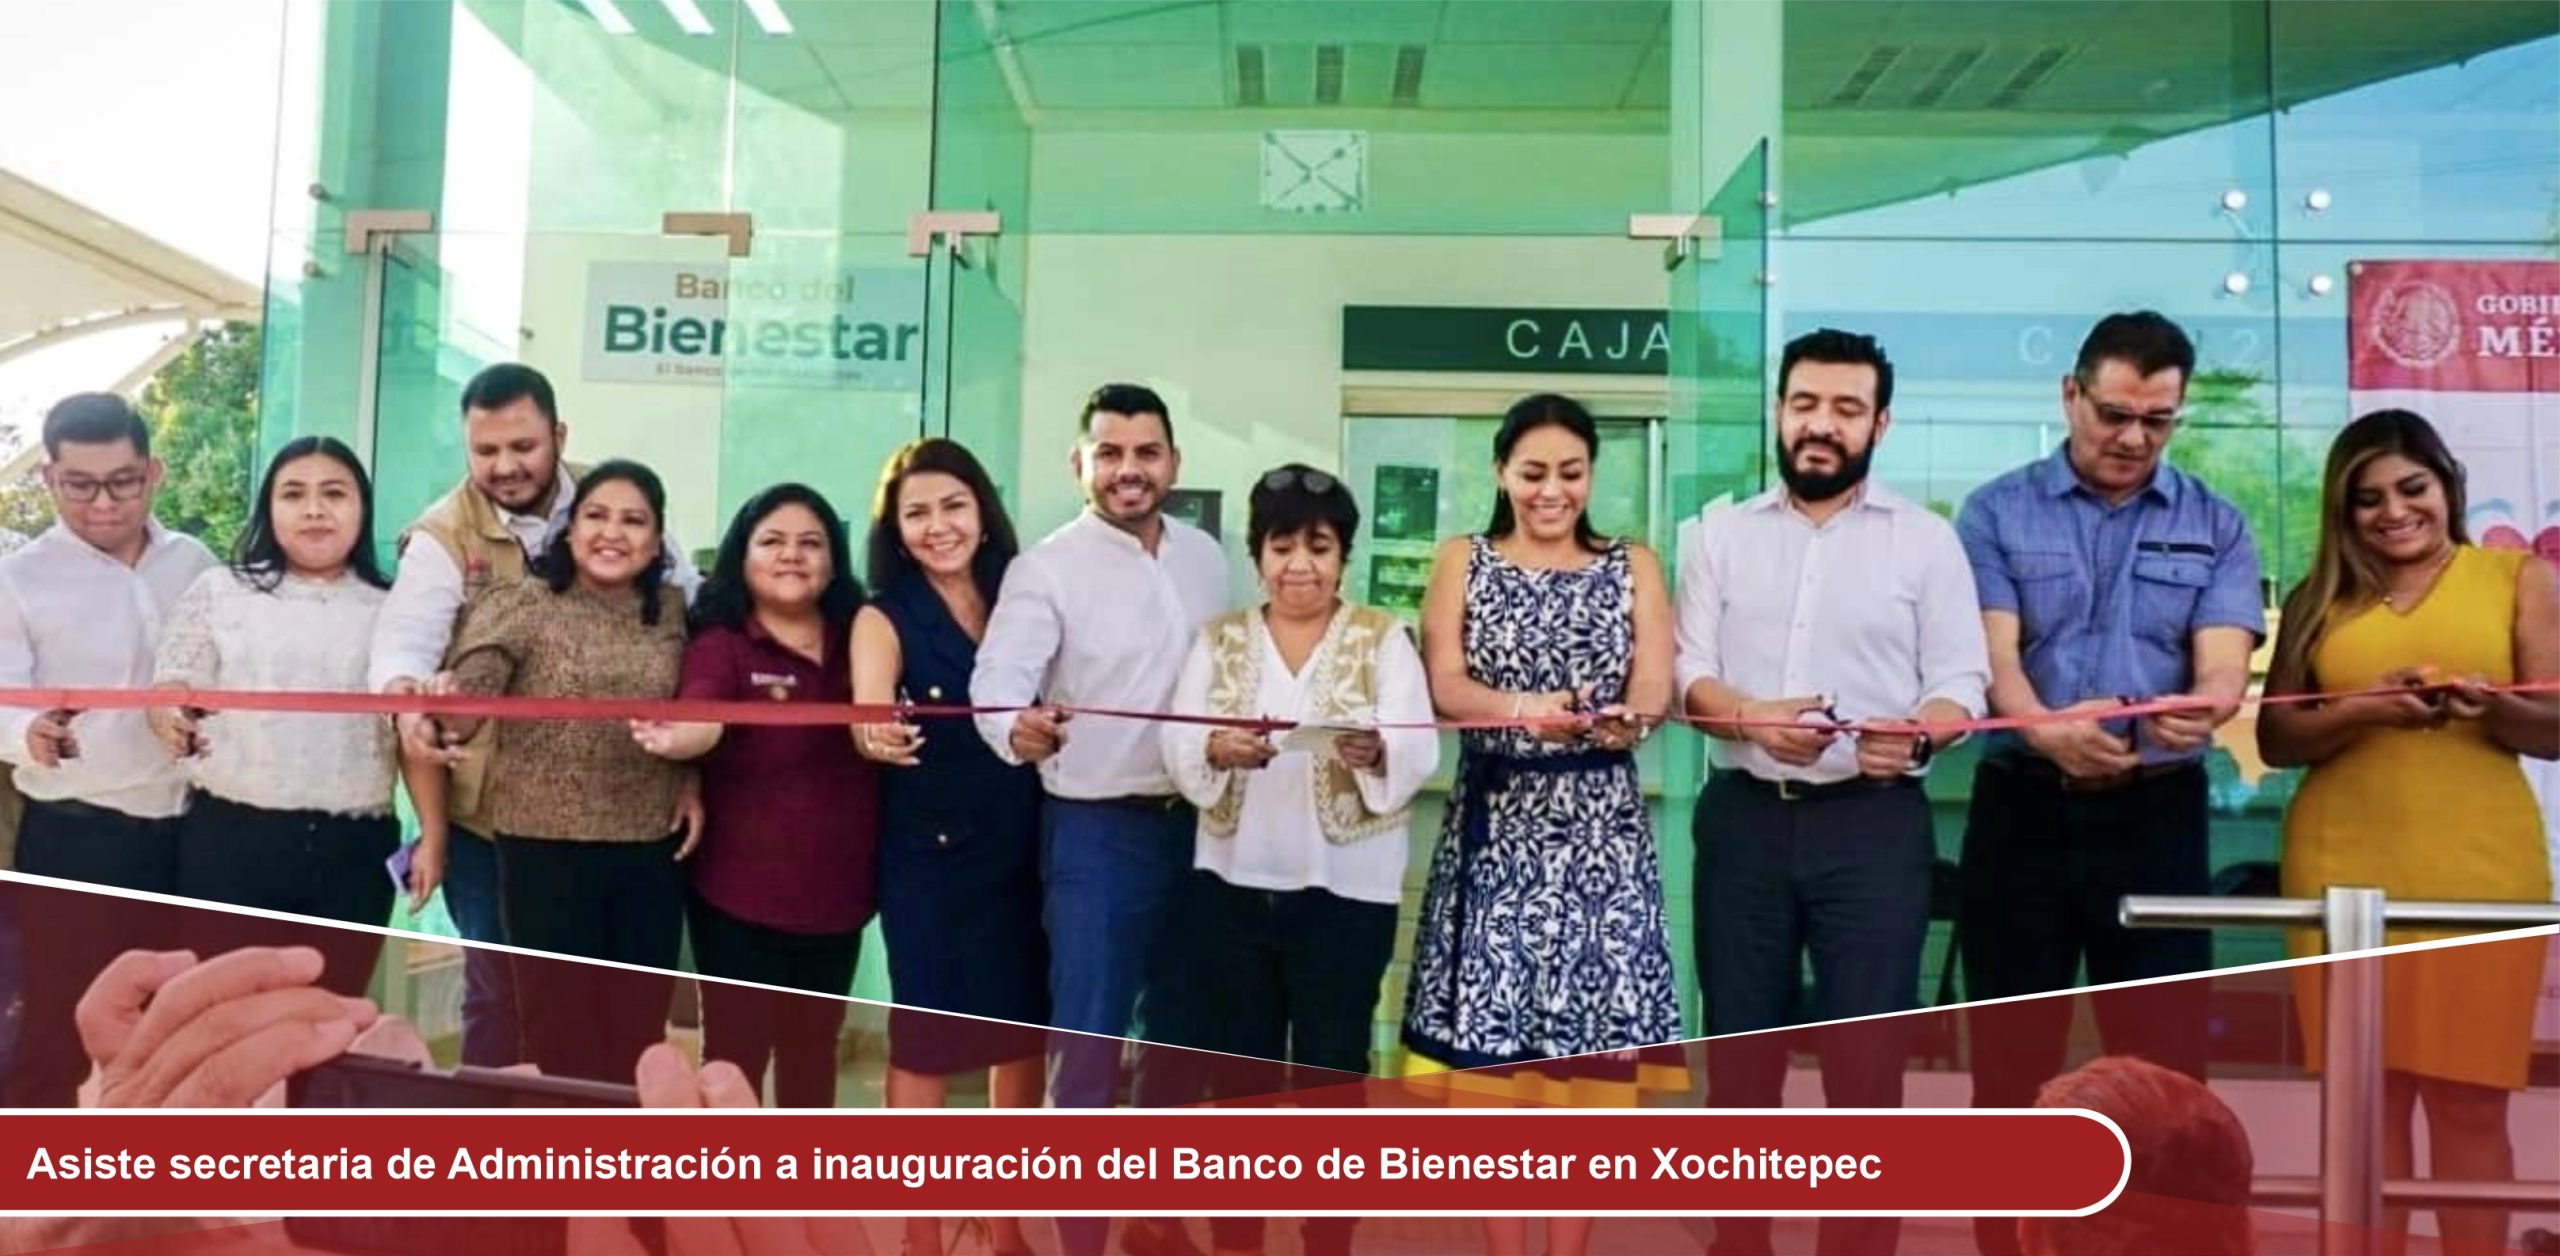 Asiste secretaria de Administración a inauguración del Banco de Bienestar en Xochitepec